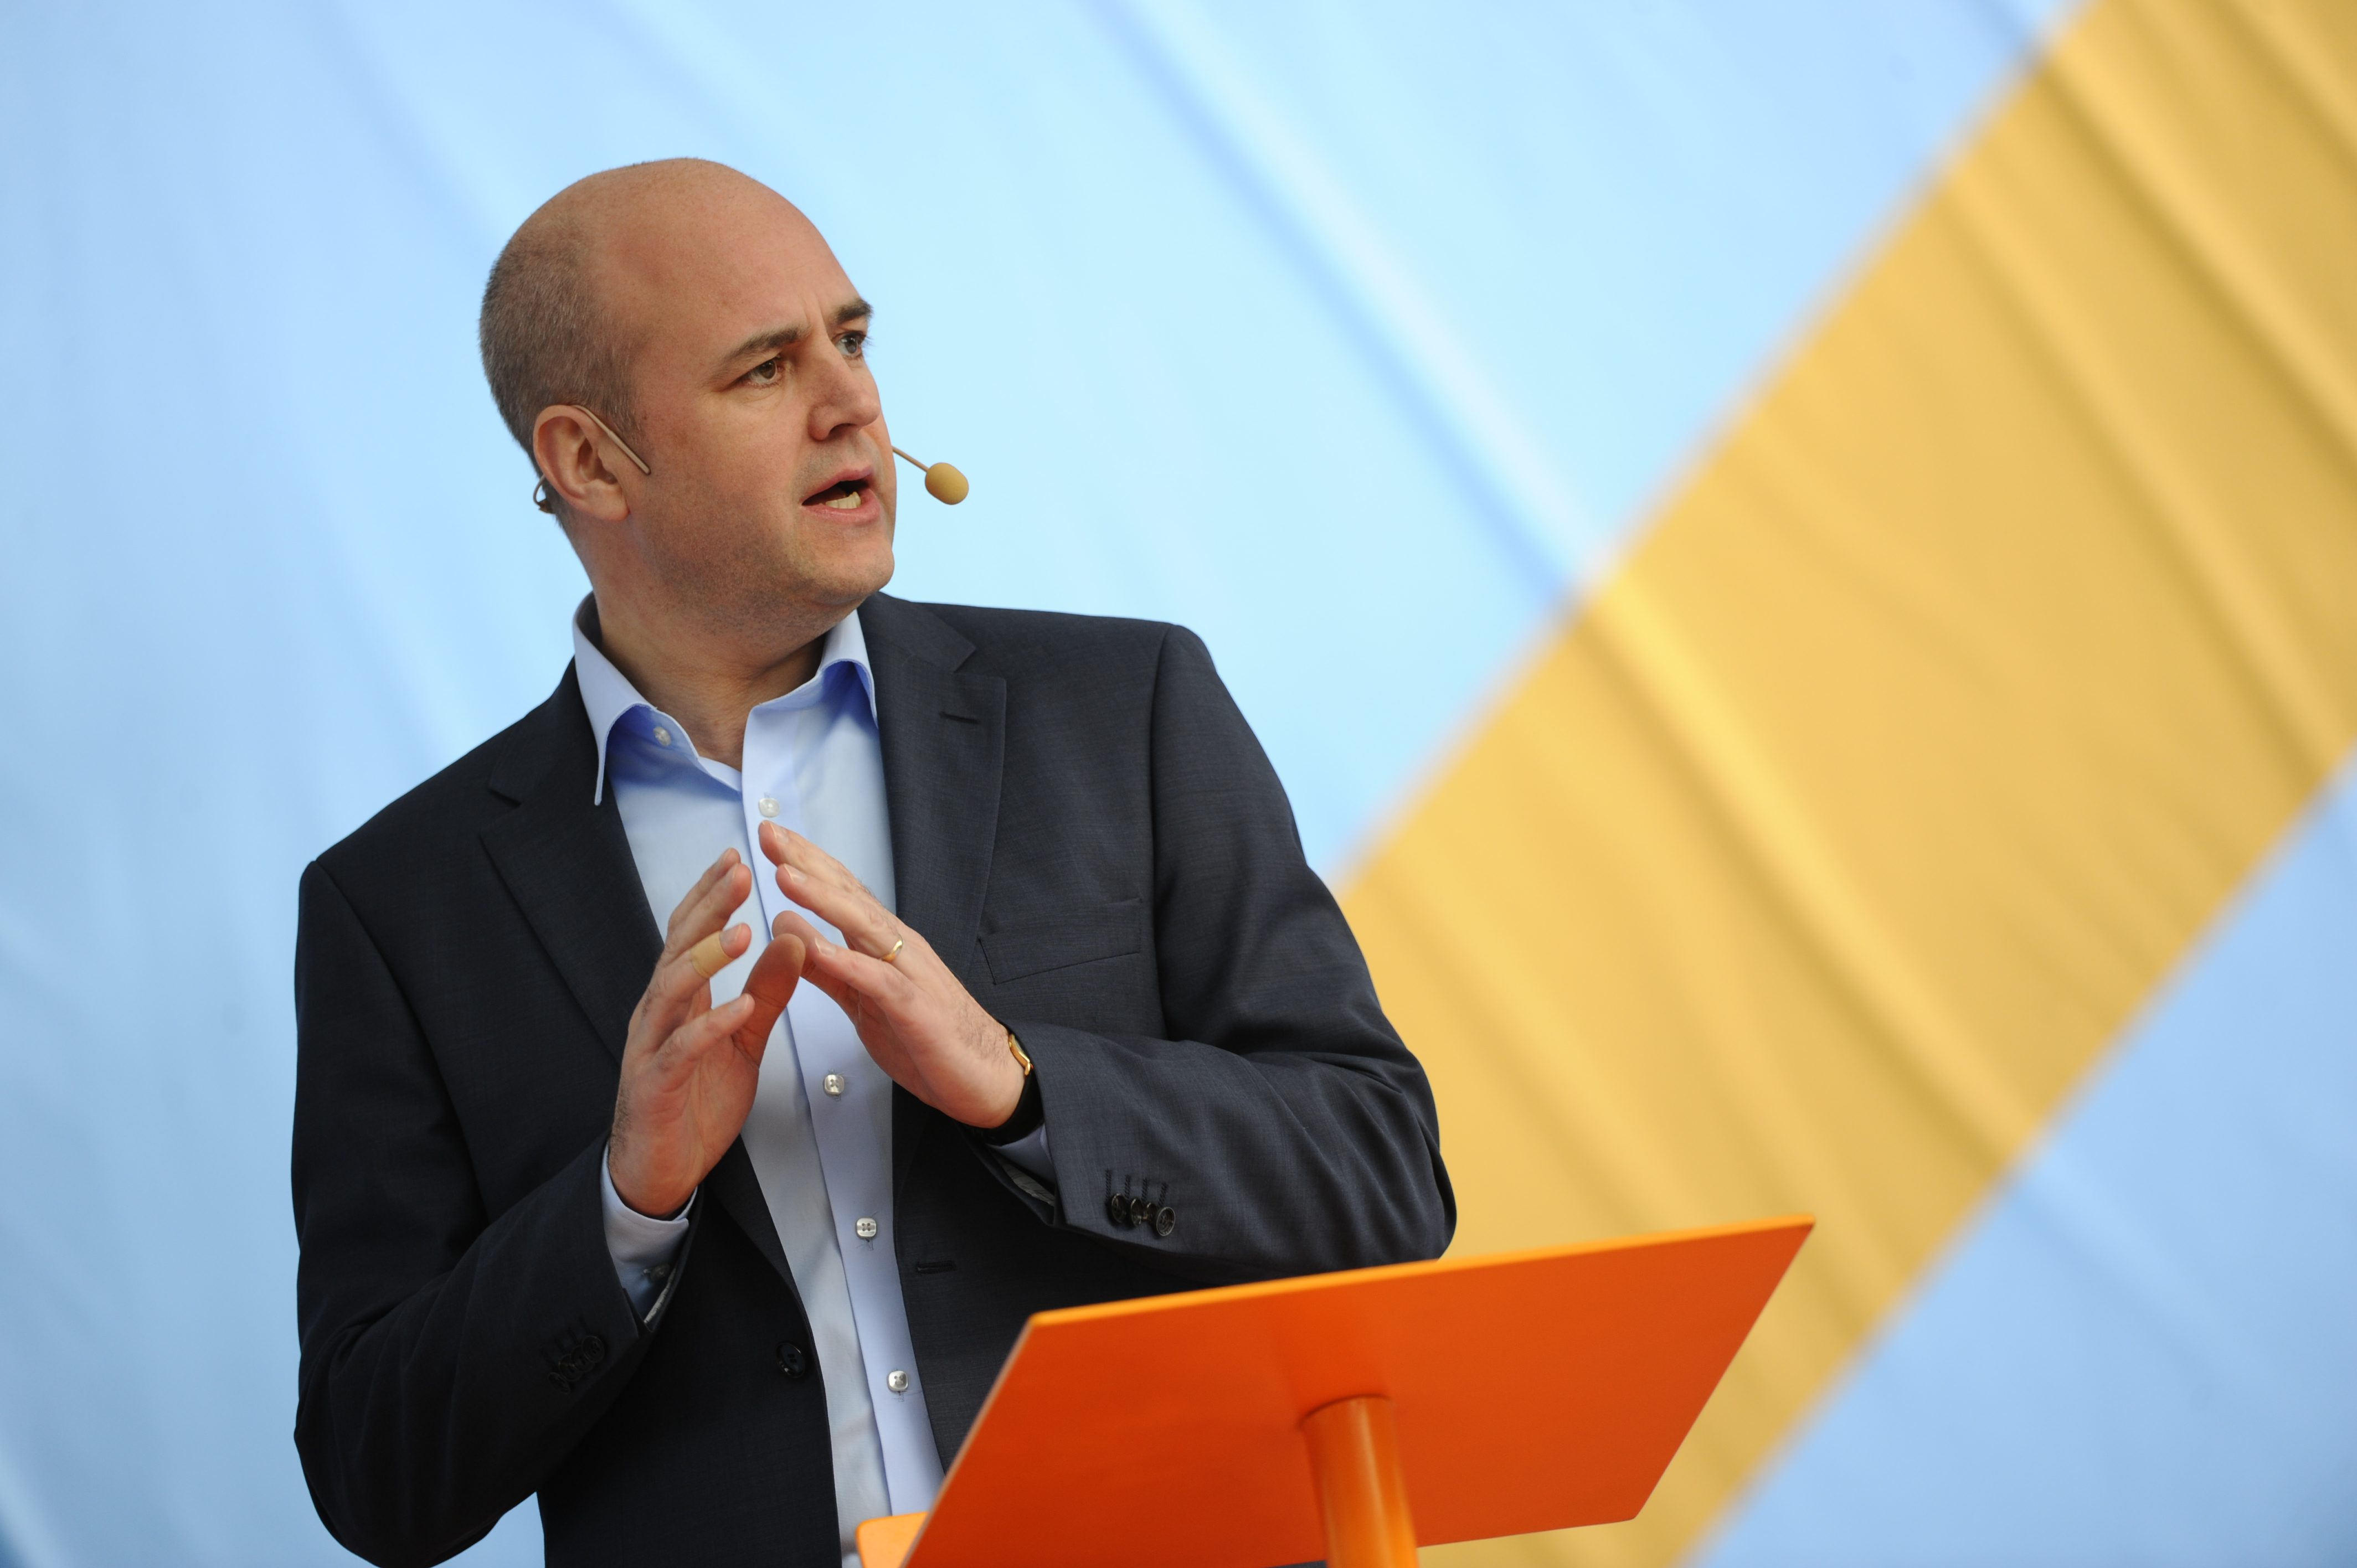 Enligt Esbjörnsson är Fredrik Reinfeldt en ynkrygg.